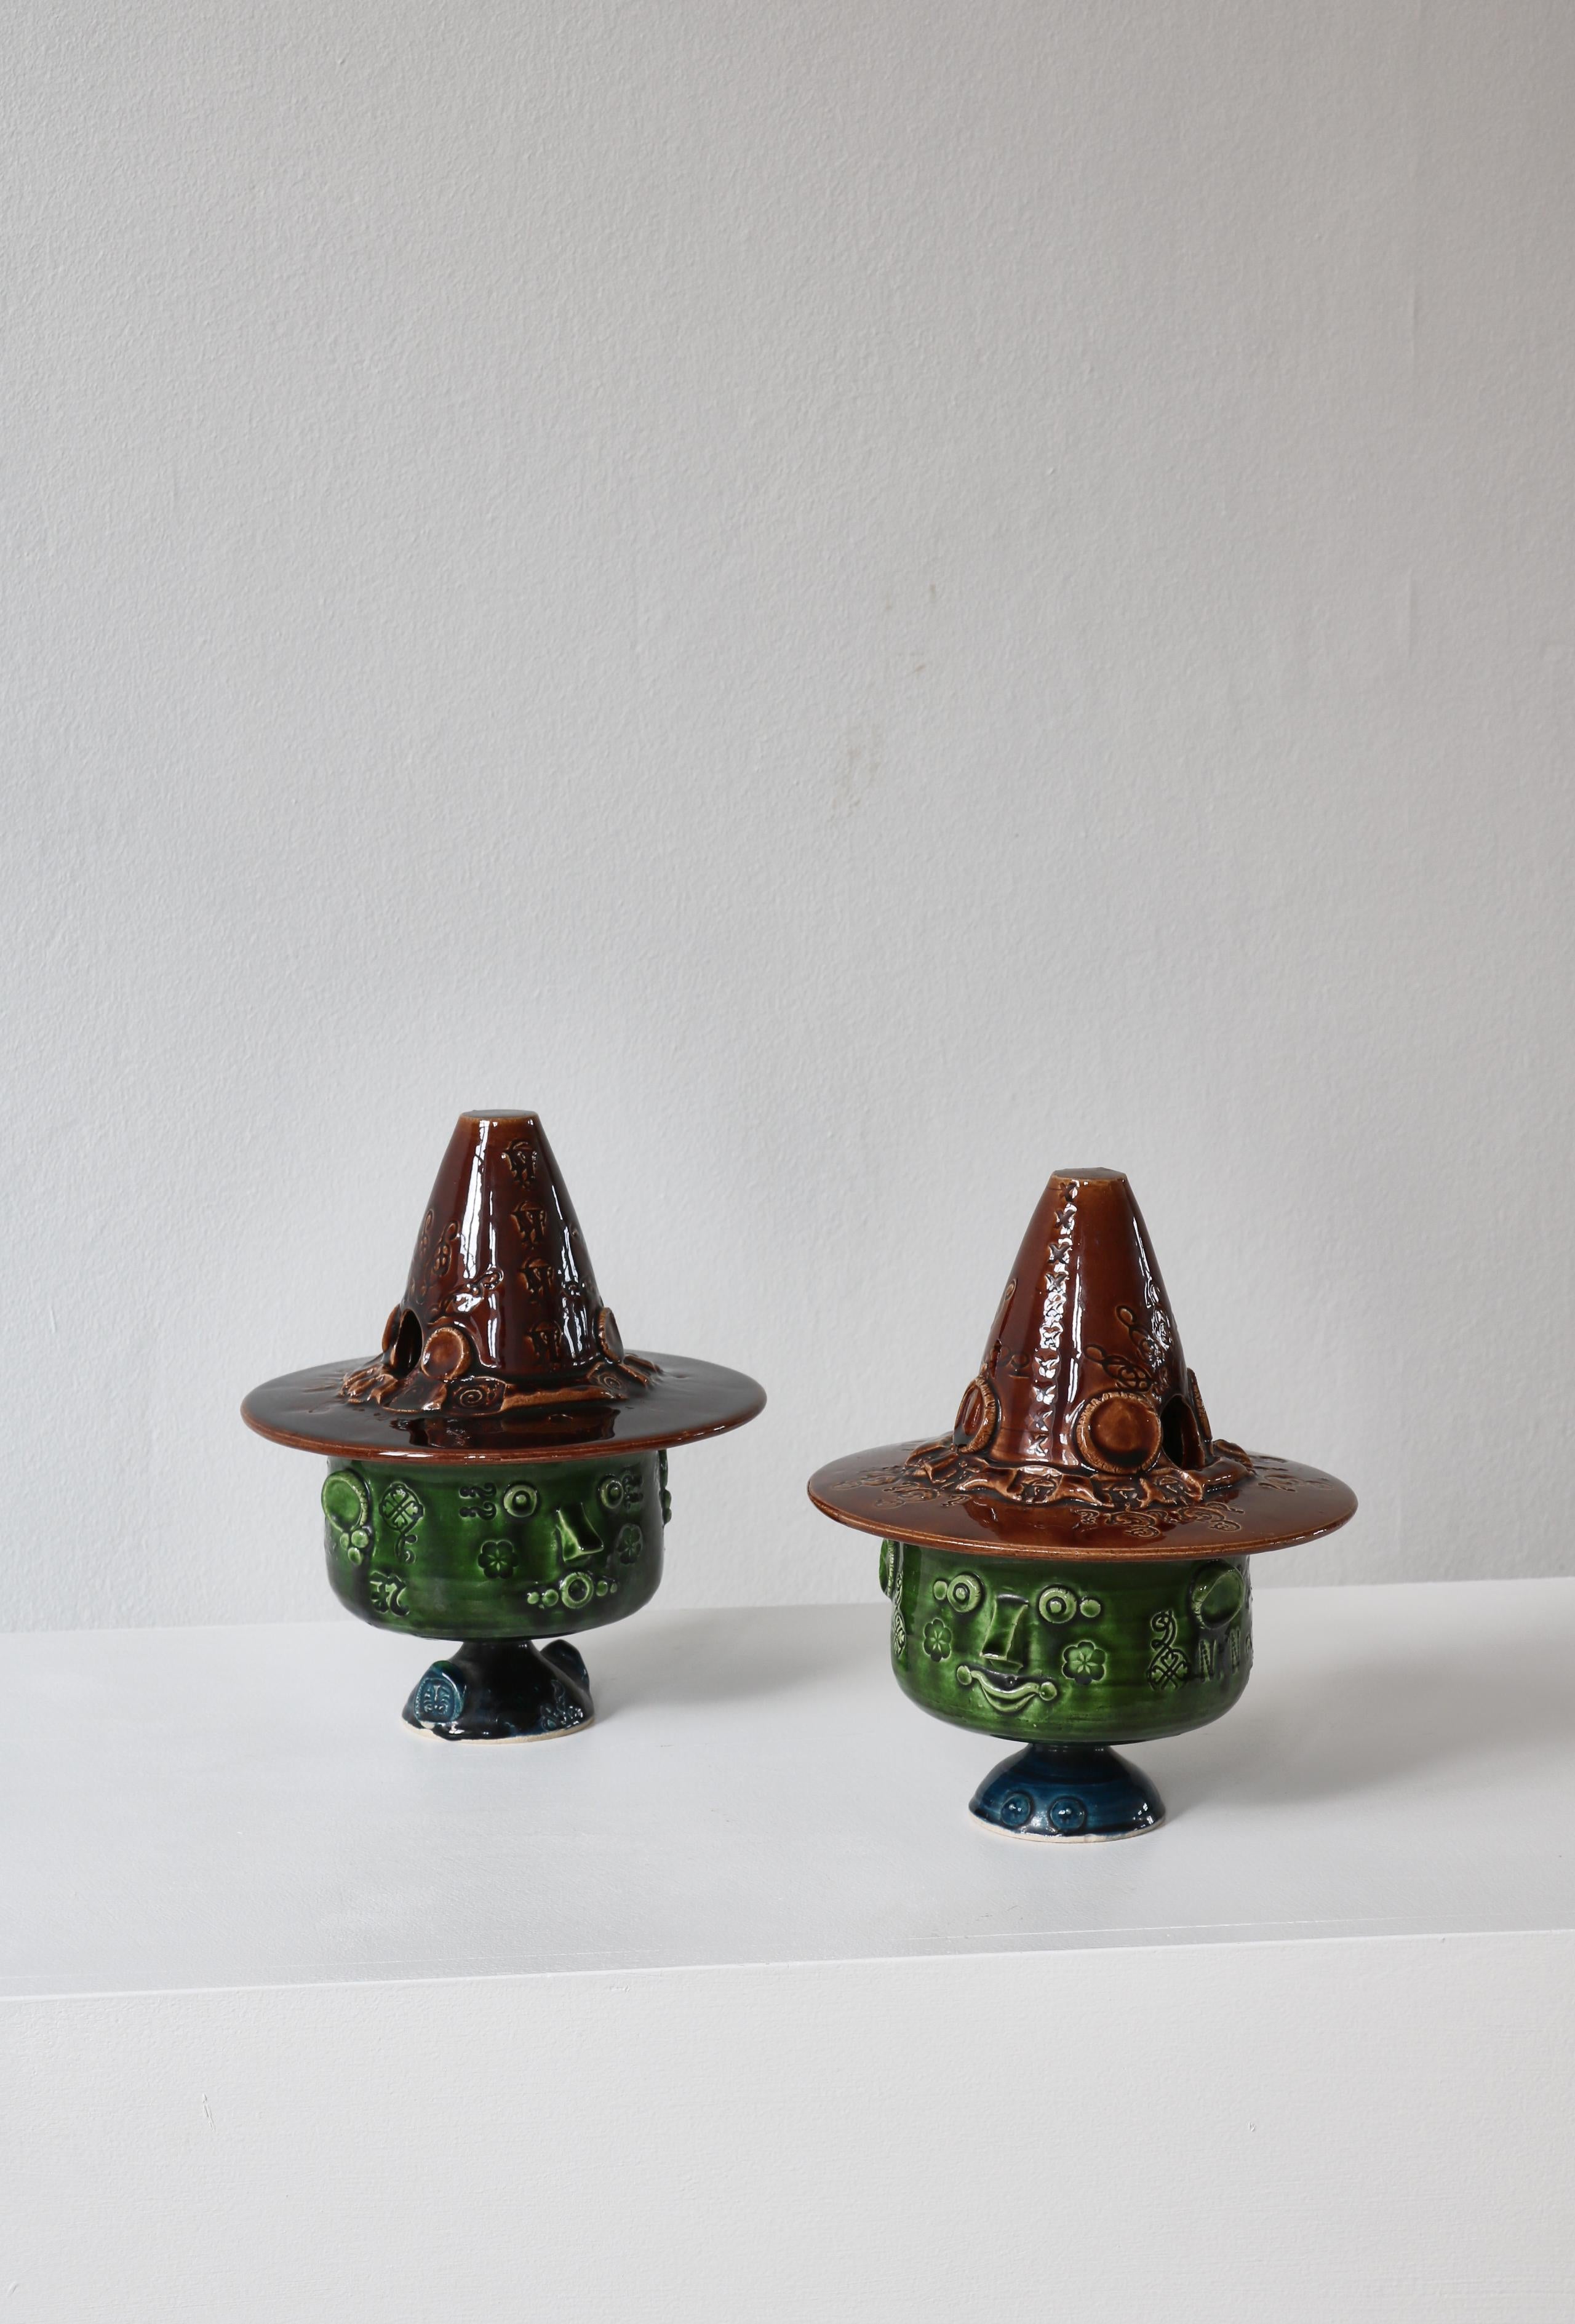 Wonderful pair of unique stoneware vases handmade by Bjørn Wiinblad at his own studio 